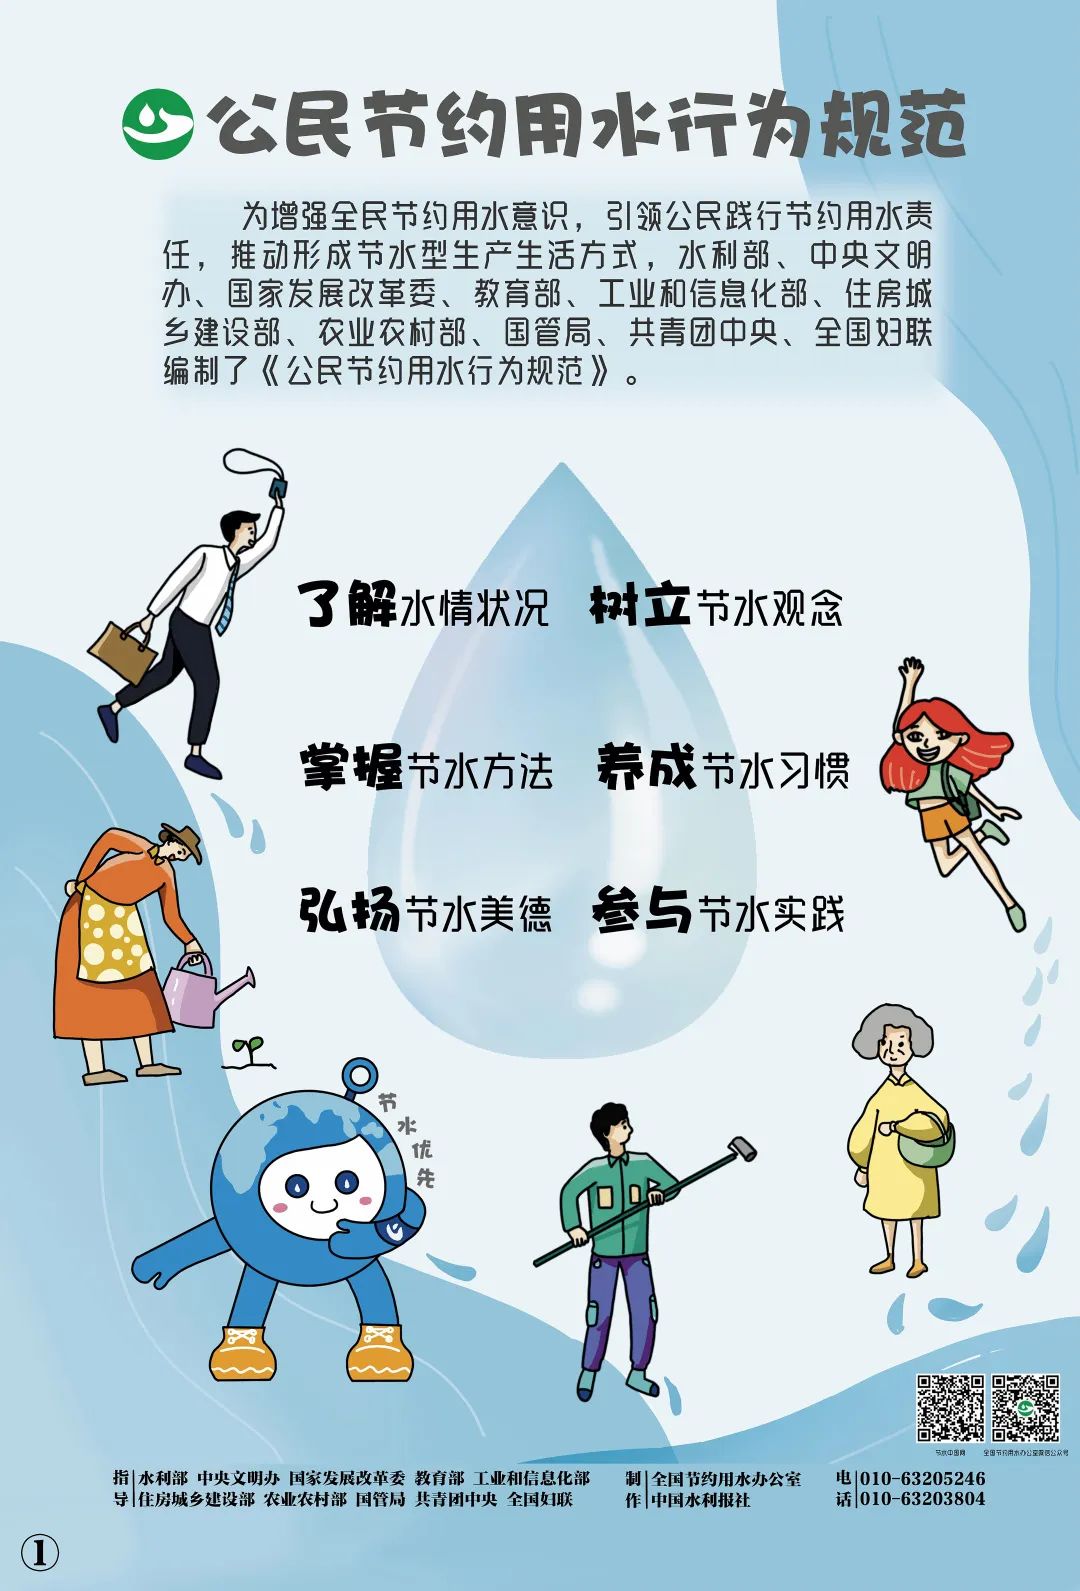 权威发布 | 《公民节约用水行为规范》主题海报